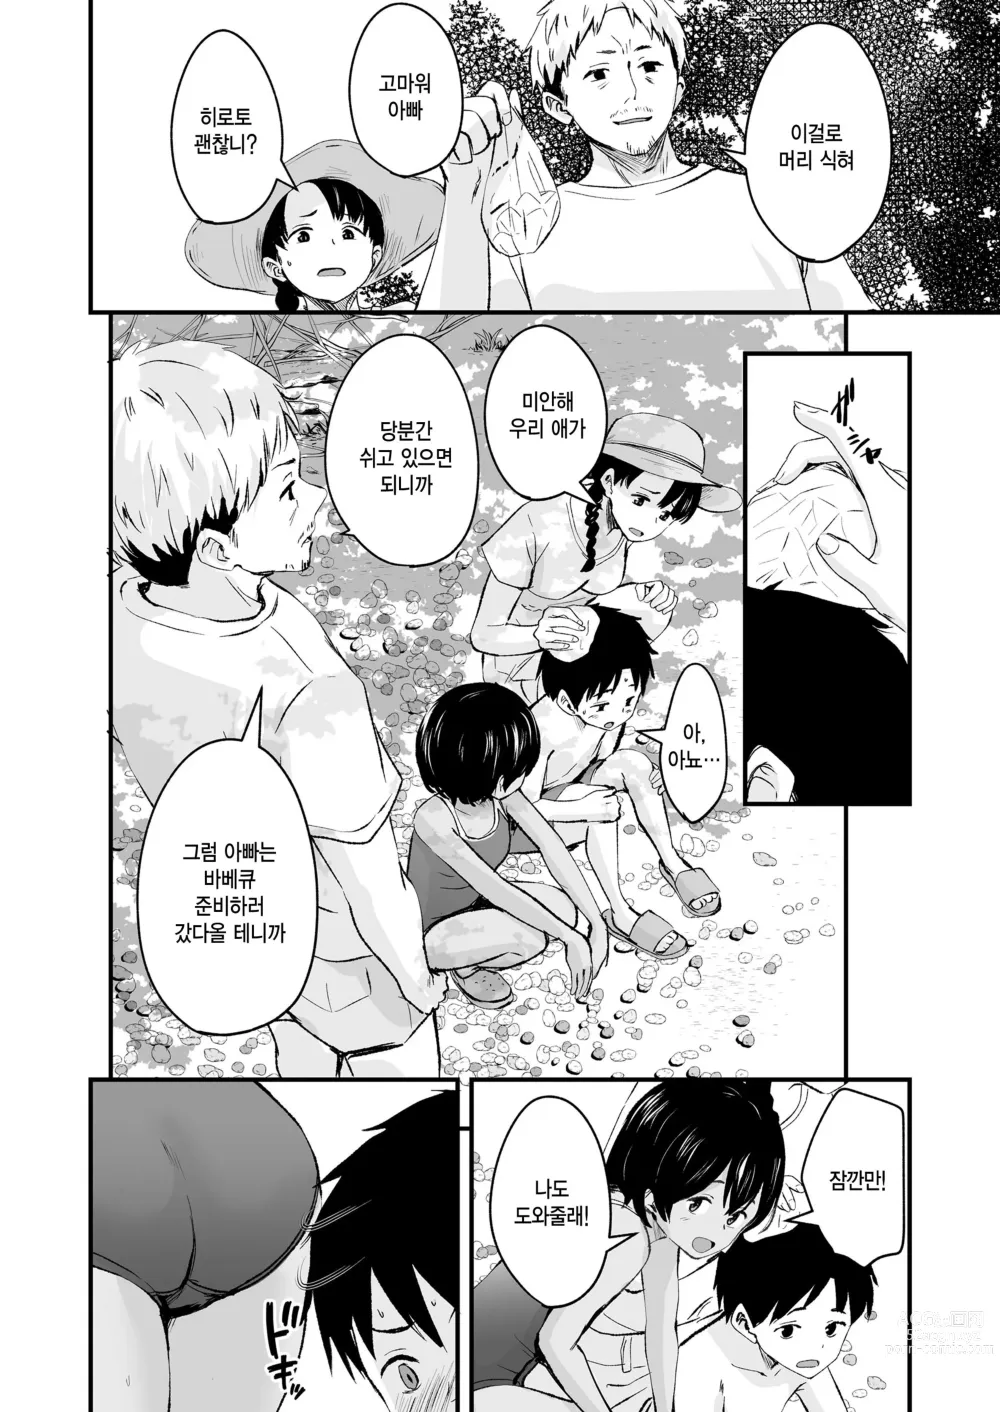 Page 6 of manga Tottemo Waruiko